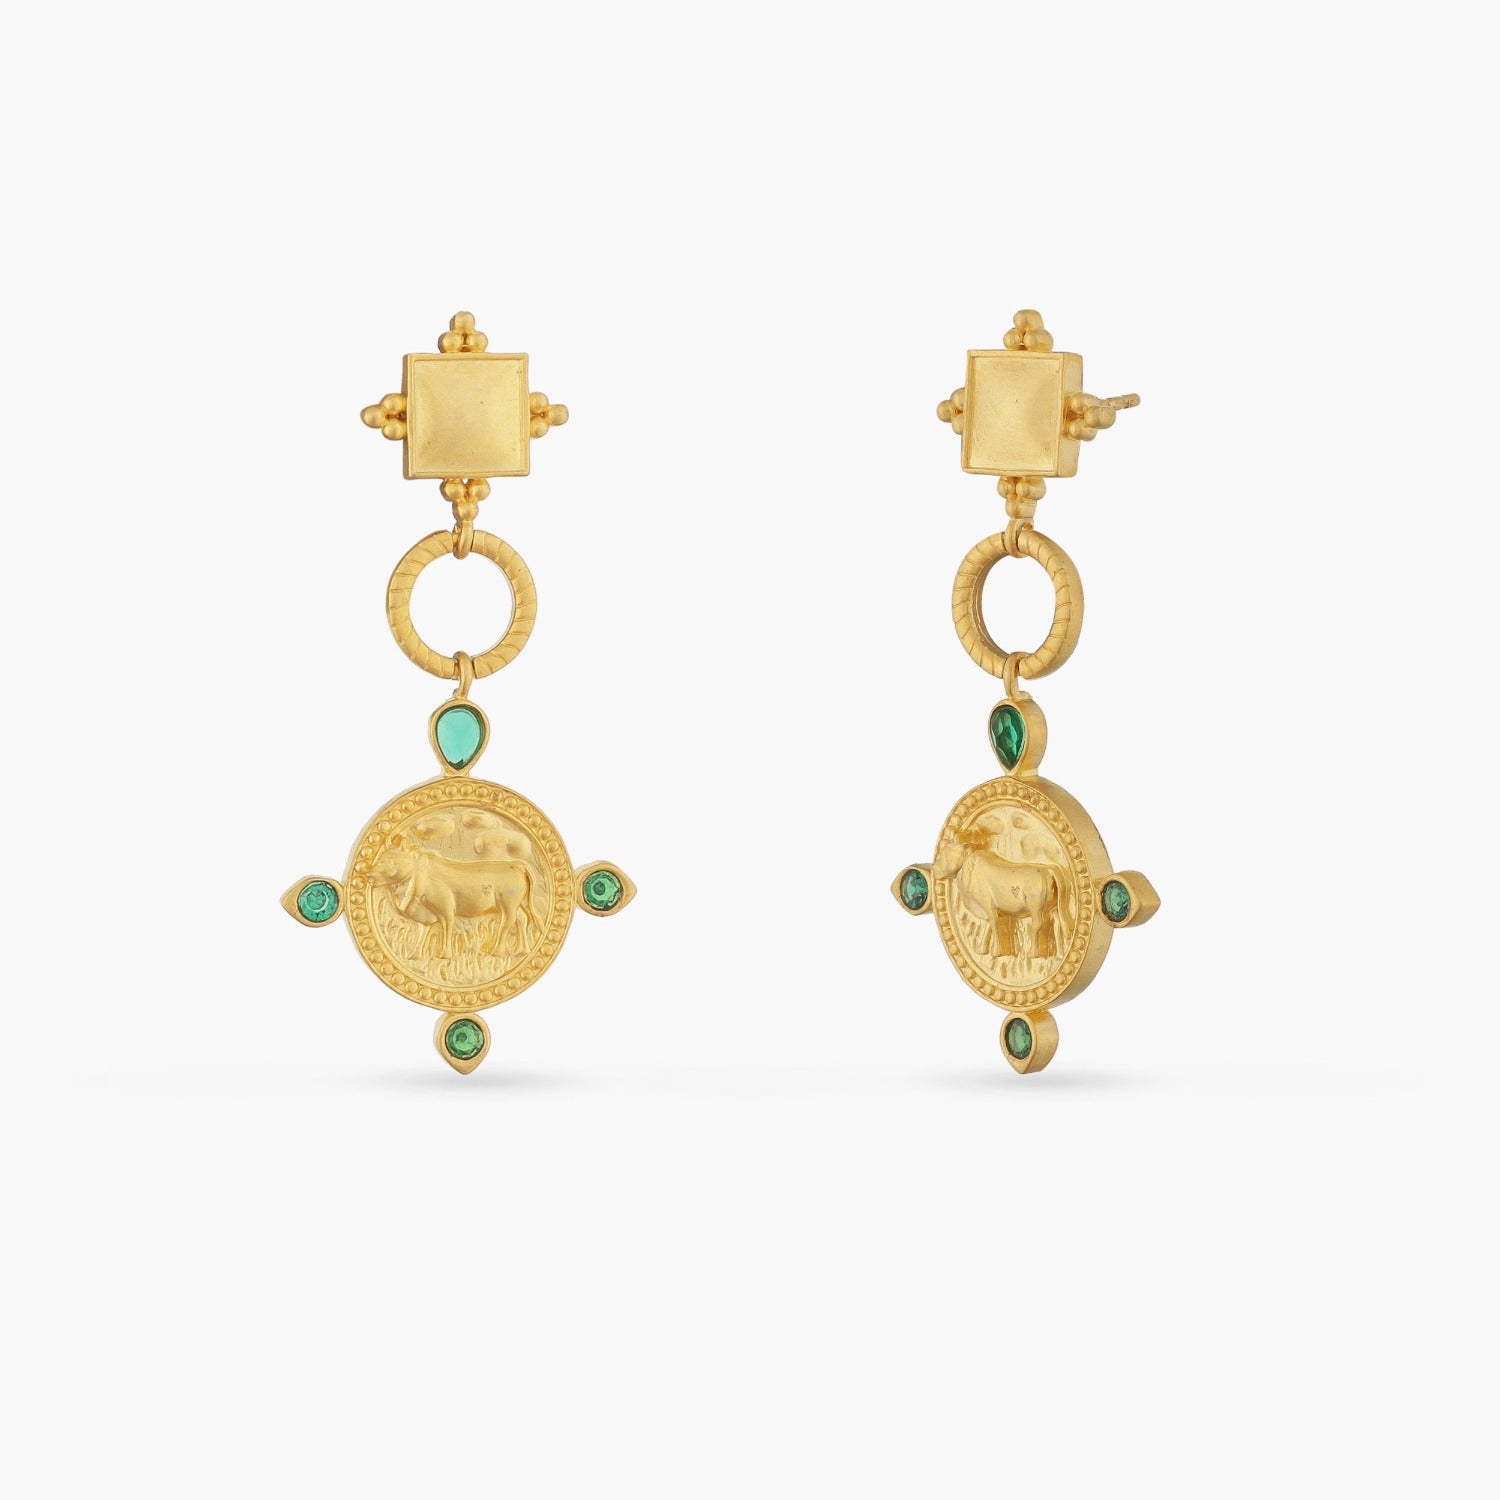 Buy Gold Earrings Under 5000 | Myntra by Neel_Vaidya - Issuu